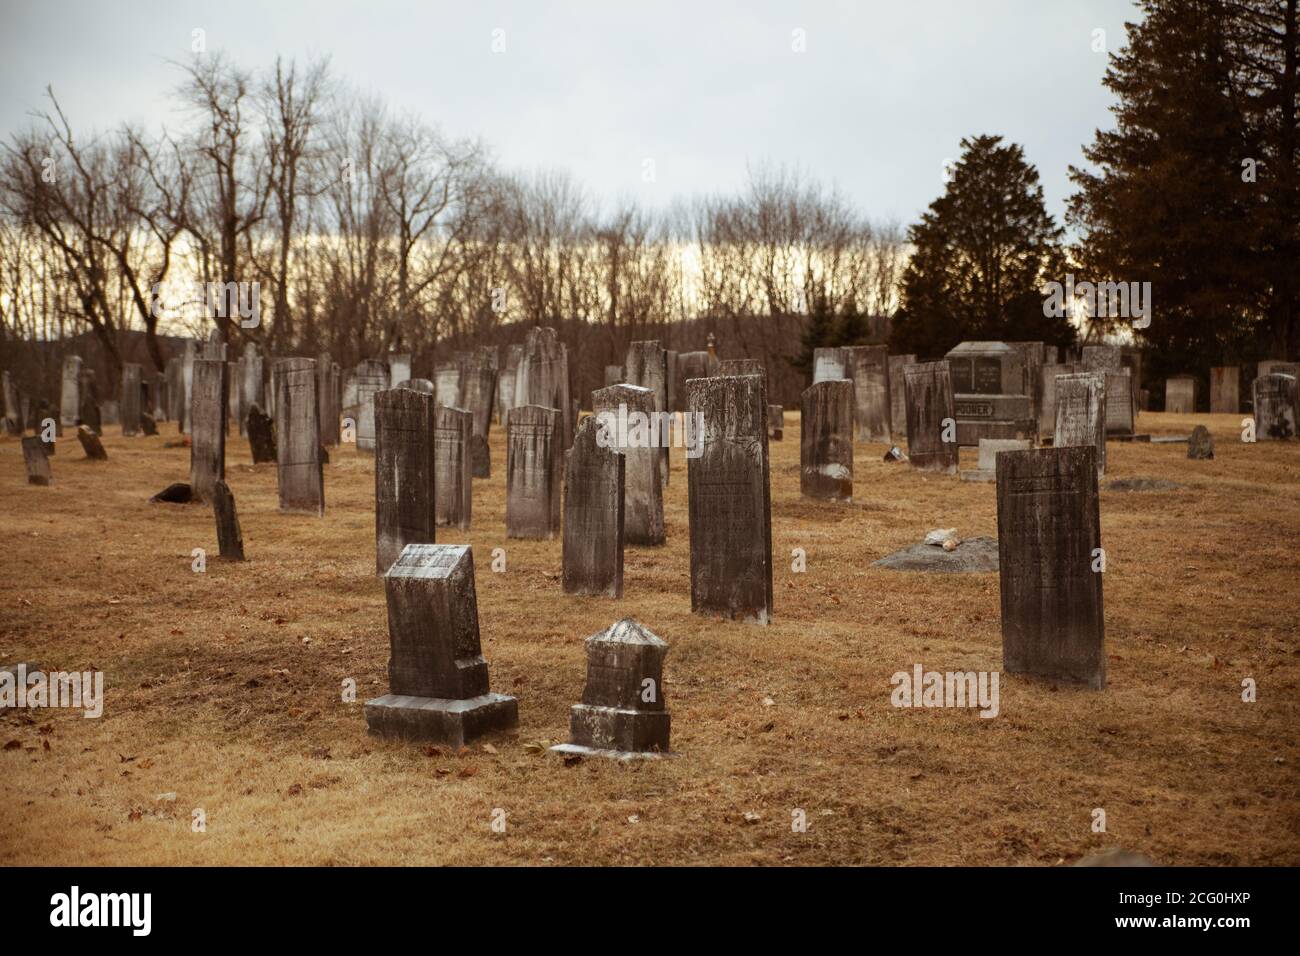 Gruseliger Friedhof an einem düsteren Tag: Alte Grabsteine, gelbes, trockenes Gras sind vorne, Bäume ohne Blätter und grauer Himmel im Hintergrund. Stockfoto